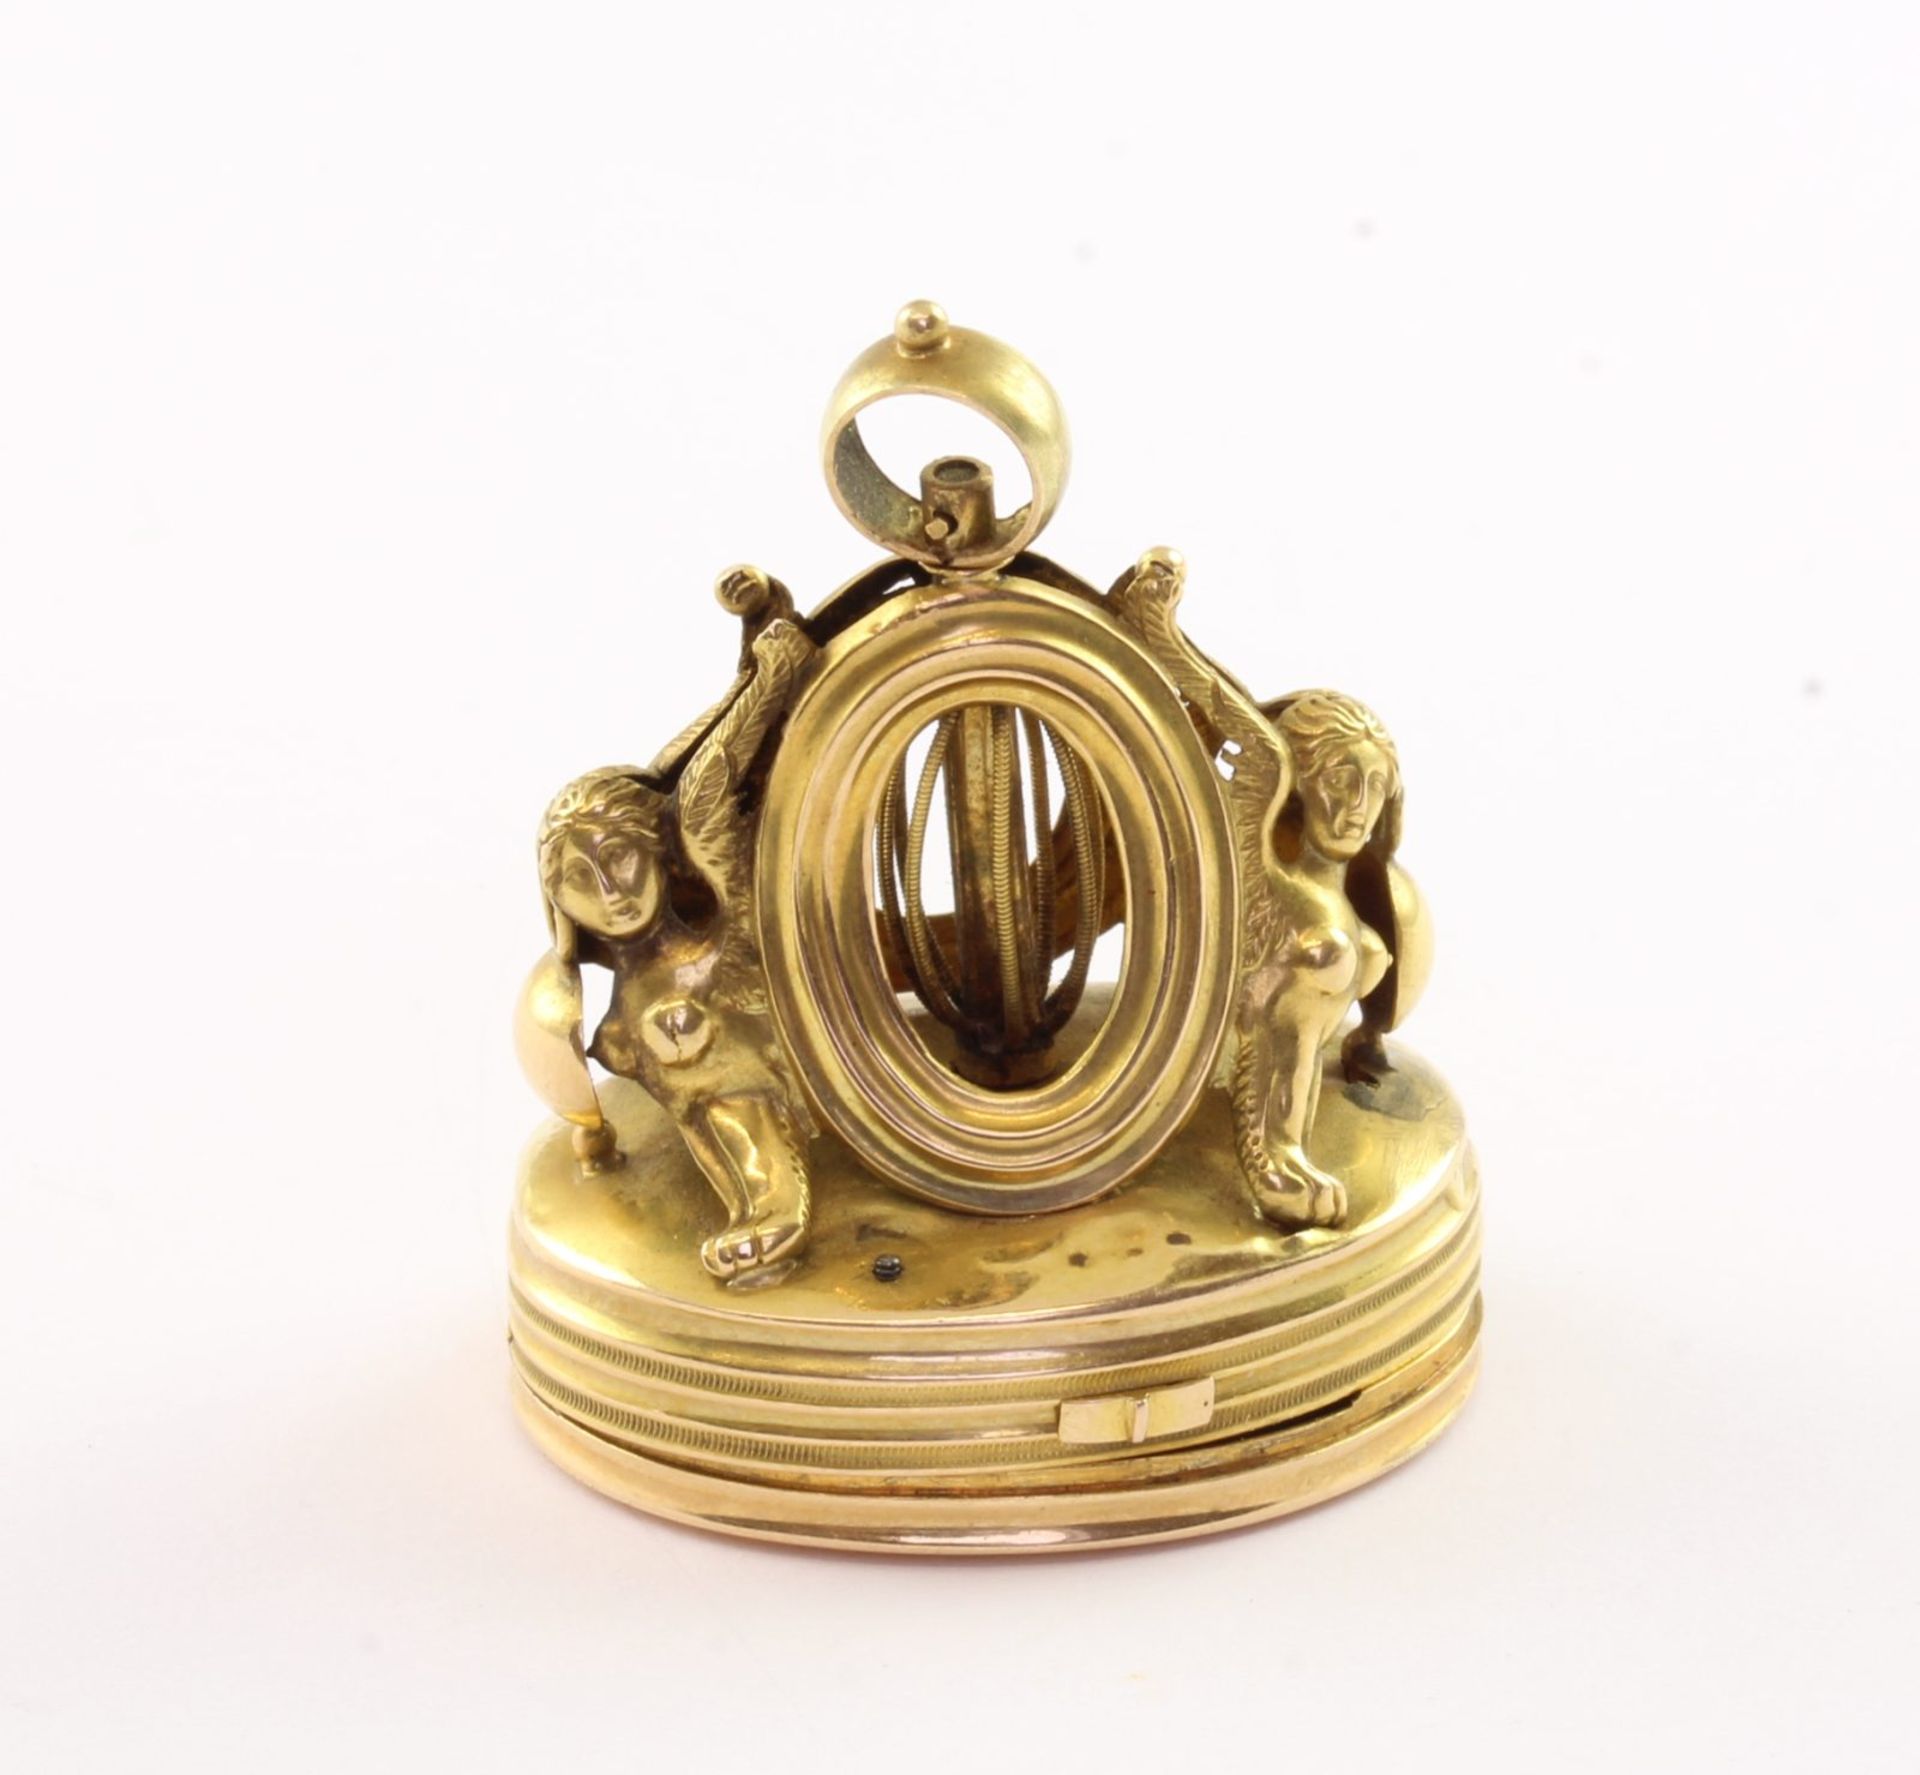 Seltene Miniaturspieluhr, 750/ooo Gelbgold, Frankreich/Schweiz, um 1800 - Bild 2 aus 5